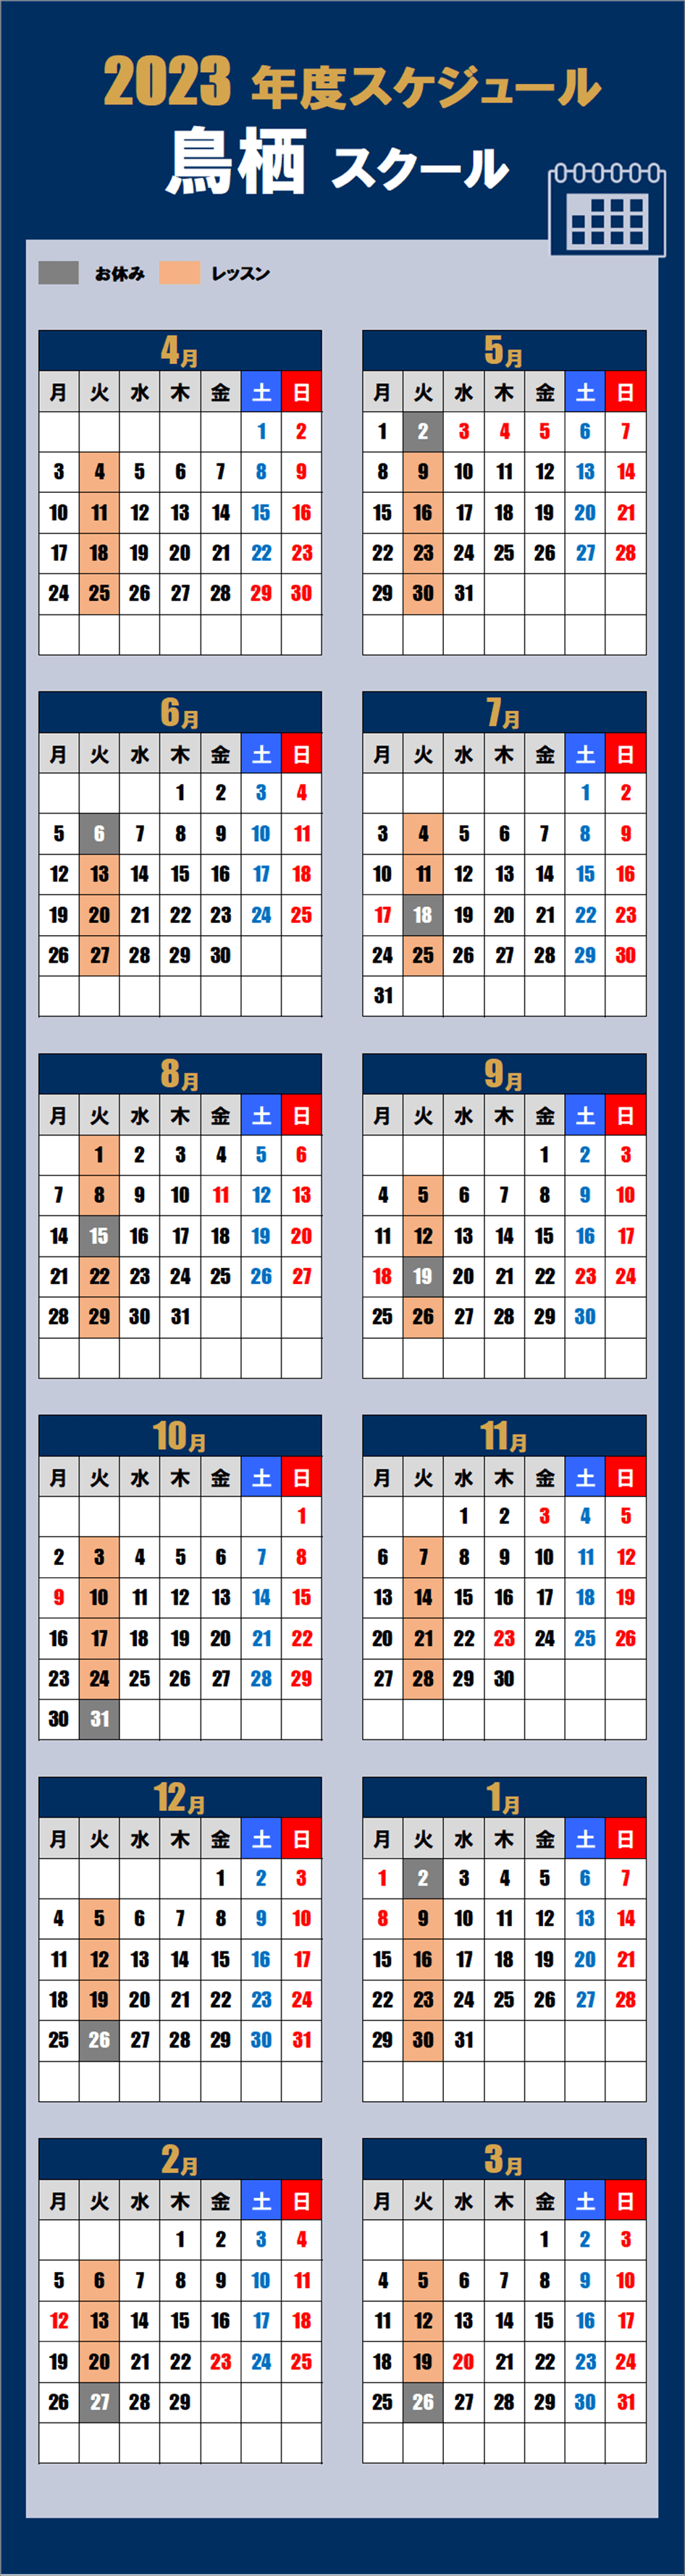 鳥栖スクールカレンダー